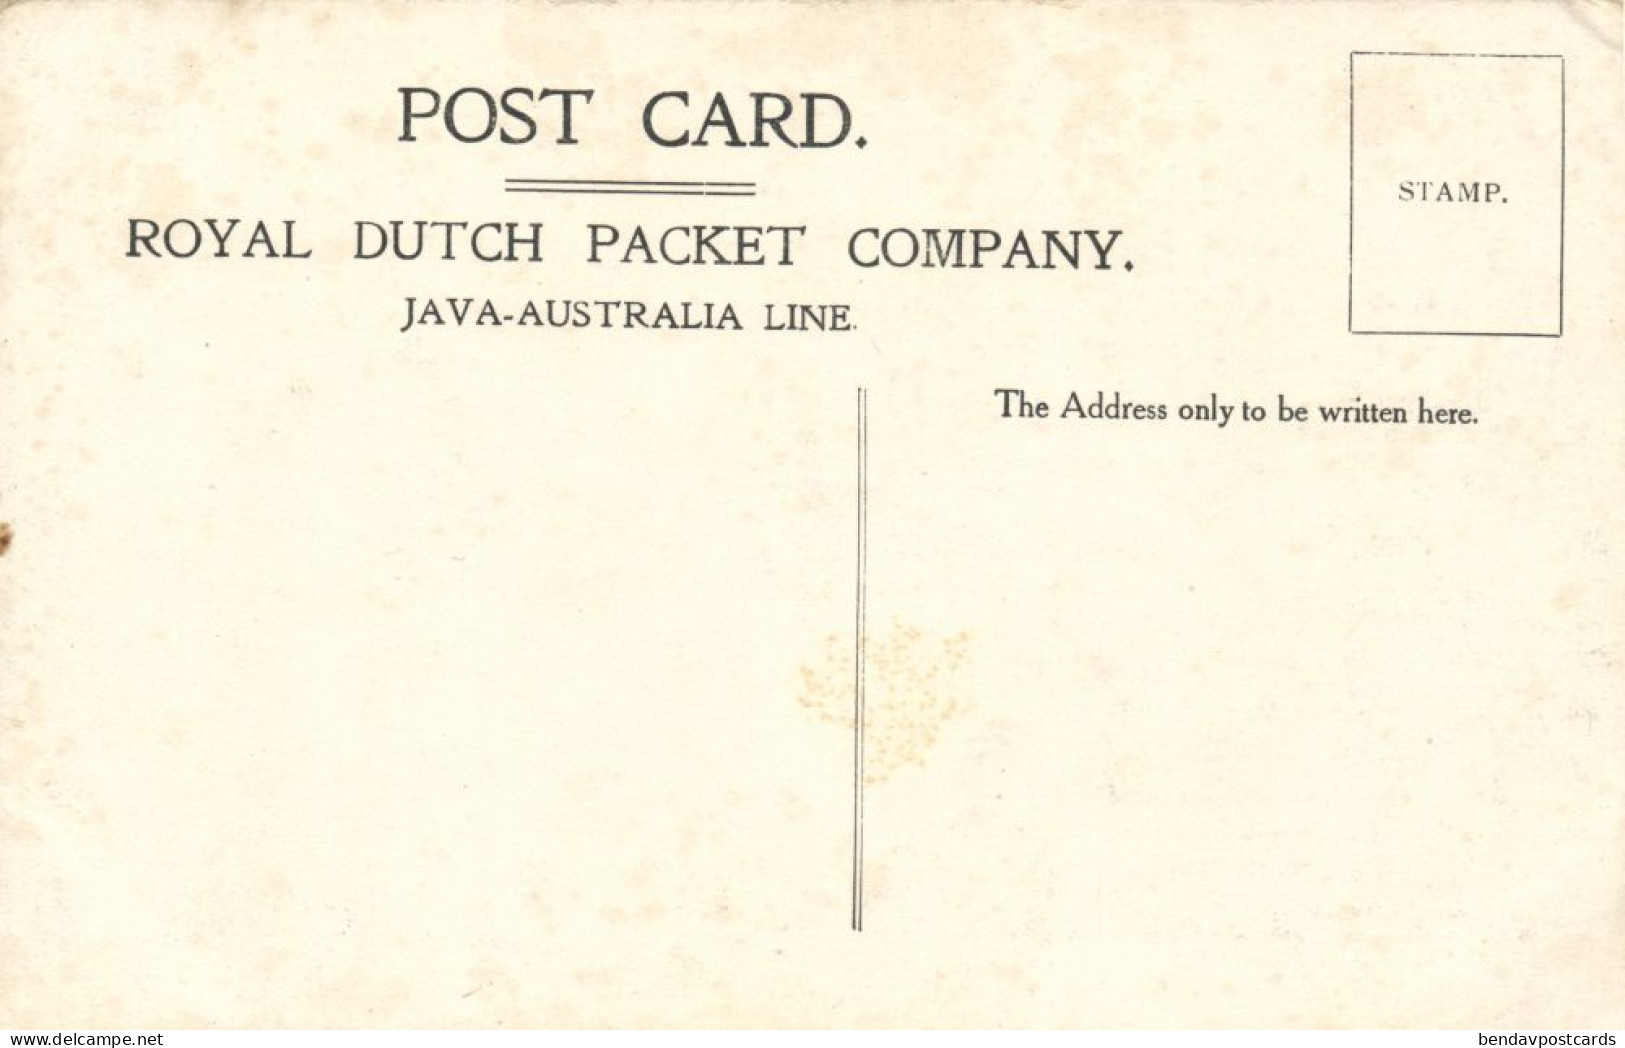 Australia, BRISBANE, Bowen Terrace (1910s) Royal Dutch Packet Company Postcard - Brisbane